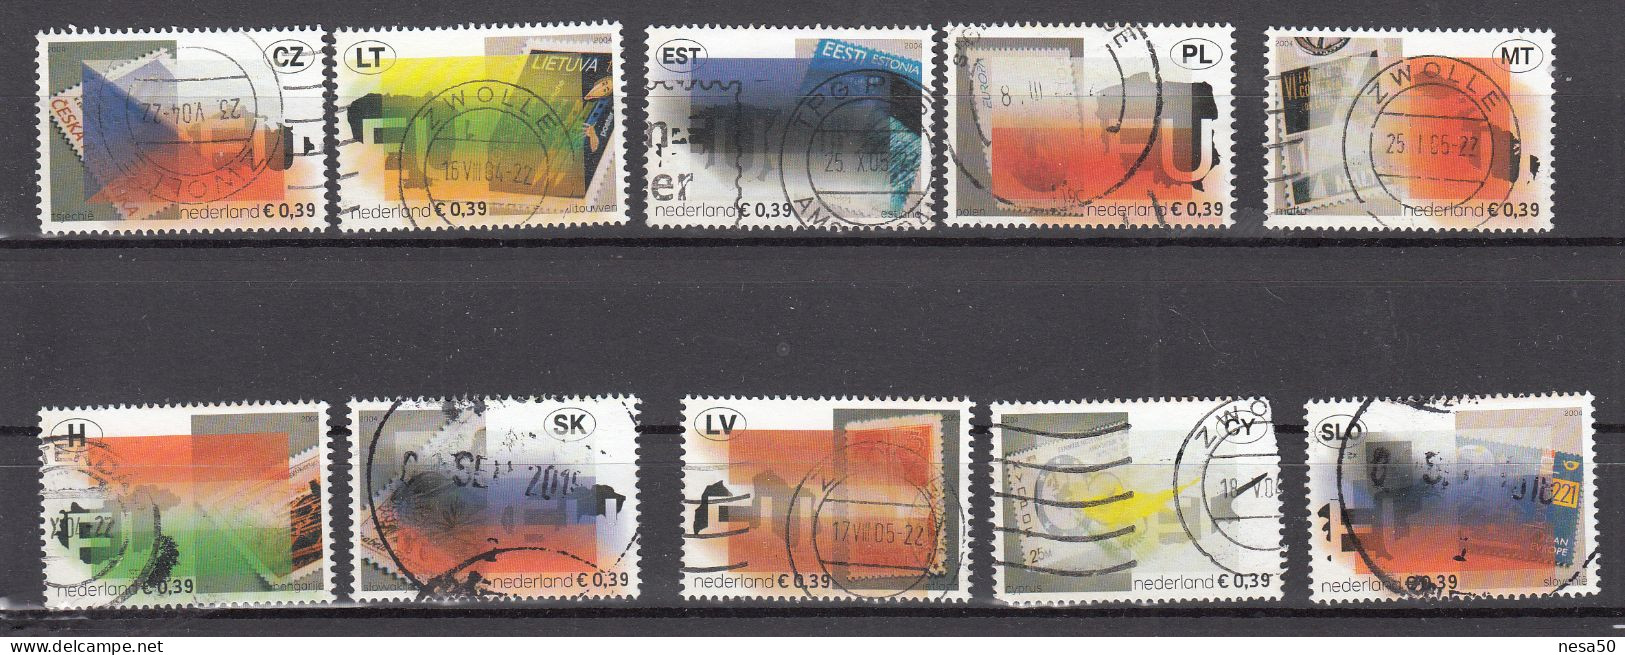 Nederland 2004 NVPH Nr 2260 - 2269 ,  Mi Nr 2205 - 2214 ; Uitbreiding Europese Unie - Usados